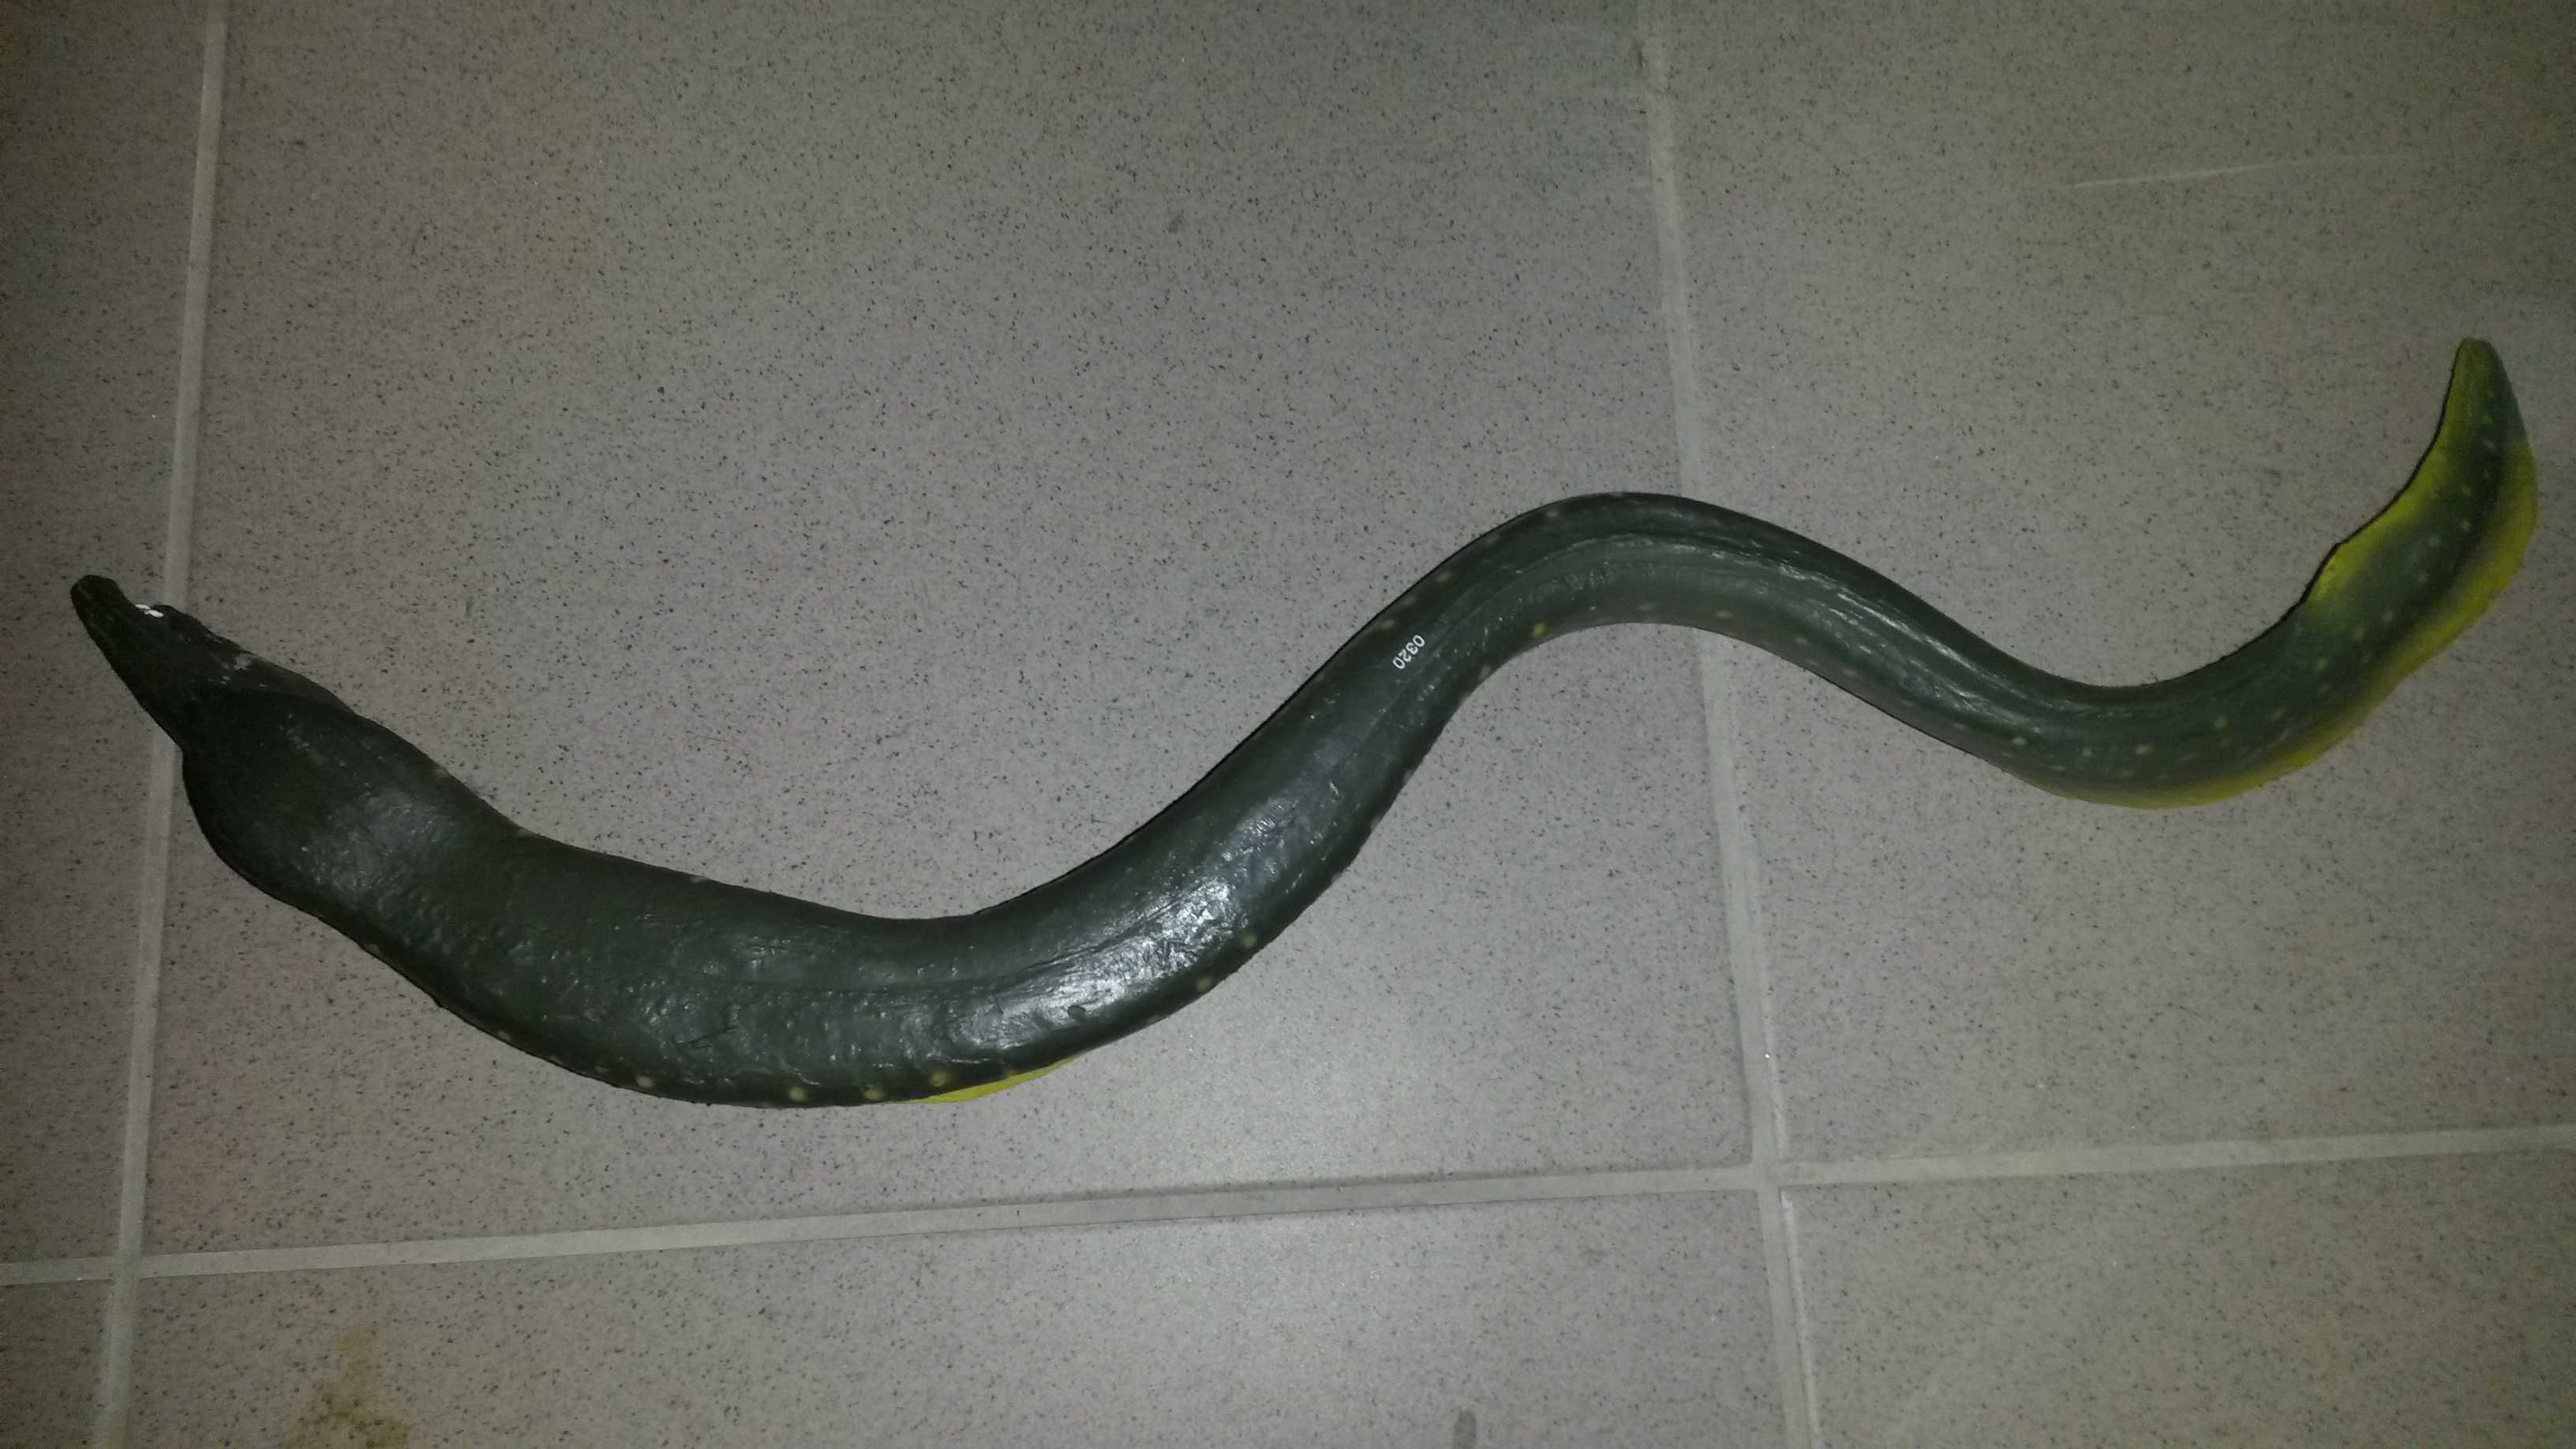 Ryba jak żywy węgorz Moray eel duży 50 cm do kolekcji